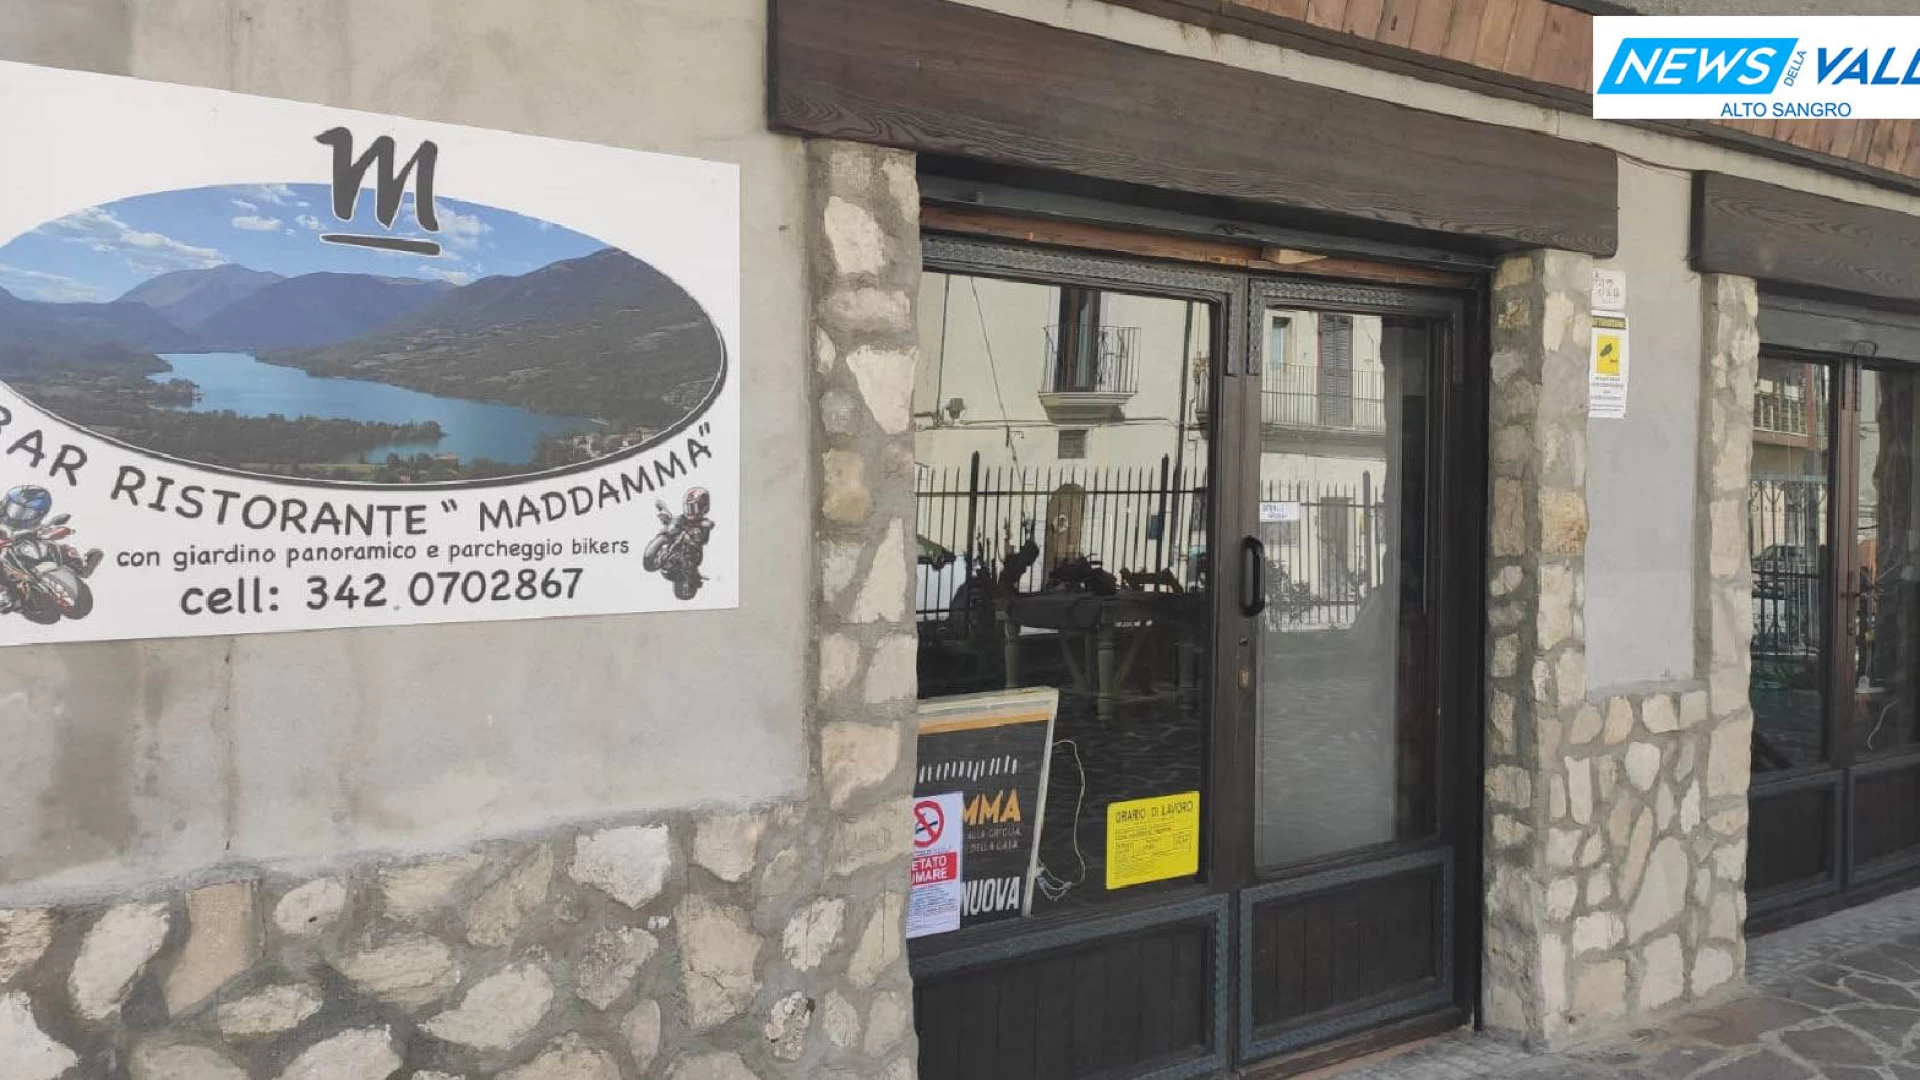 Maddamma Food&Drink, il locale ideale per una sosta gustosa immersi nelle bellezze di Barrea e dell’Abruzzo. Parcheggio riservato ai motociclisti interno alla struttura.